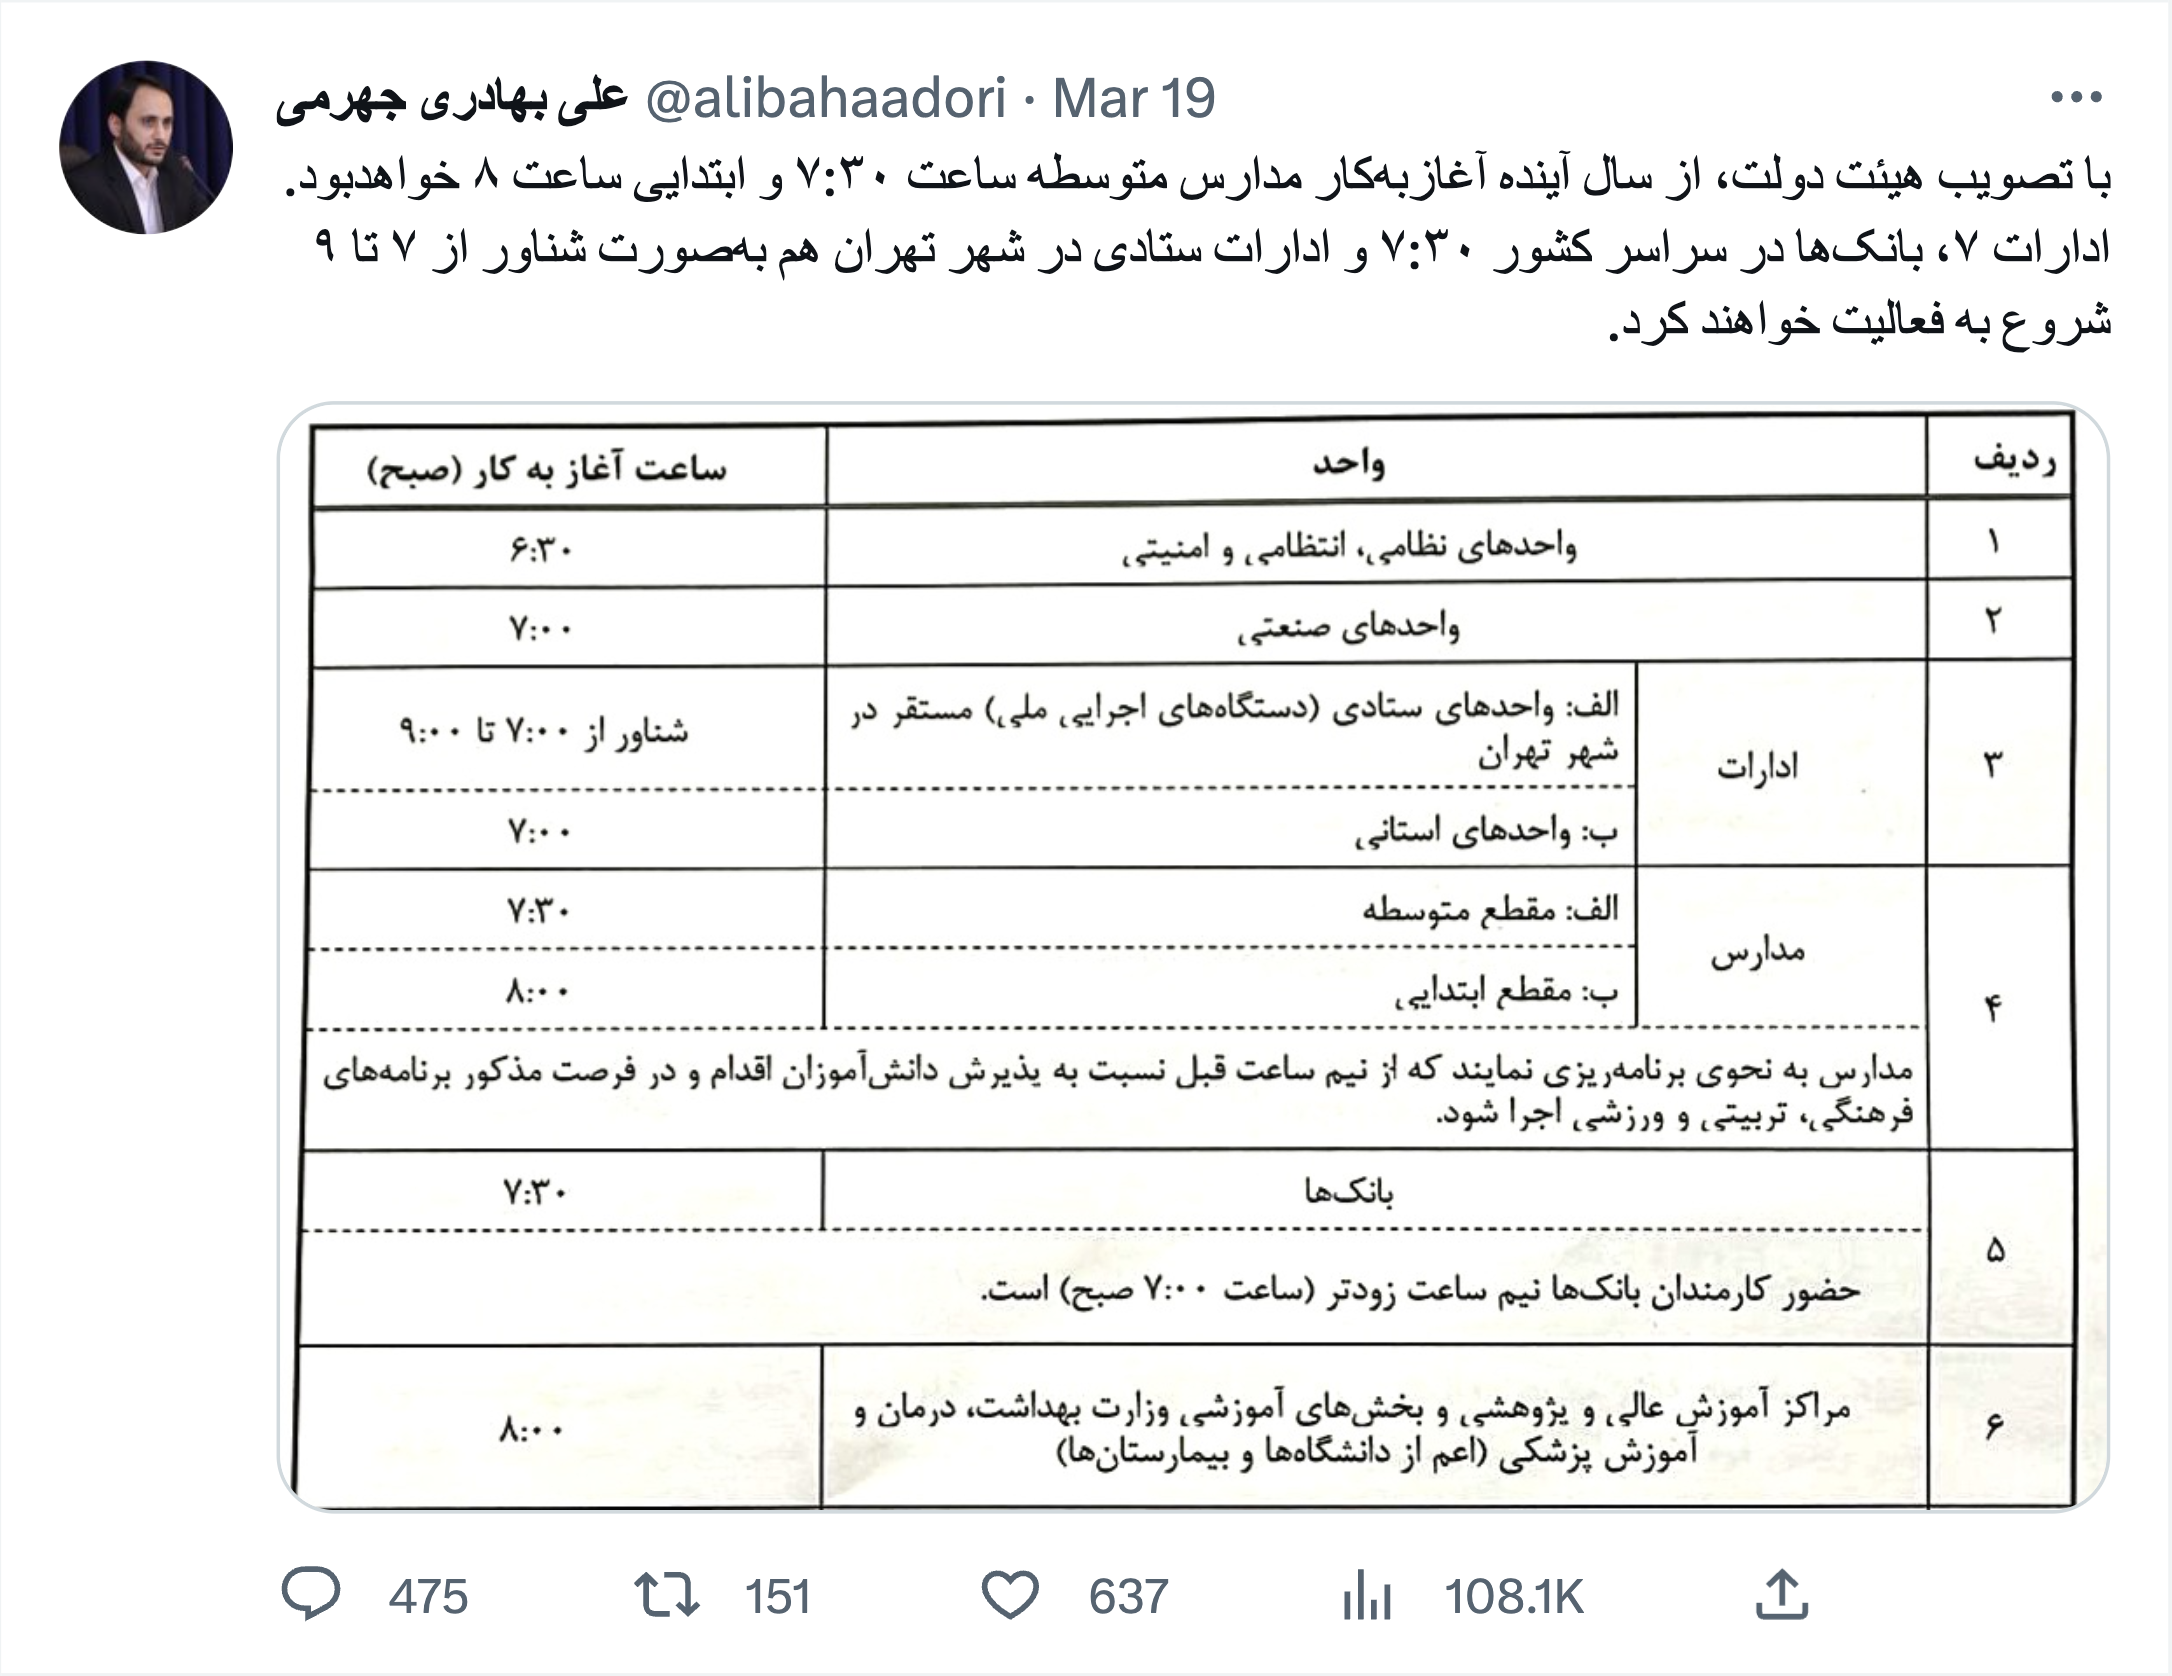 توییت آغاز به کار ادارات و سازمان ها پس از لغو تغییر ساعات رسمی کشور از طرف سخنگوی دولت "علی بهادری جهرمی"